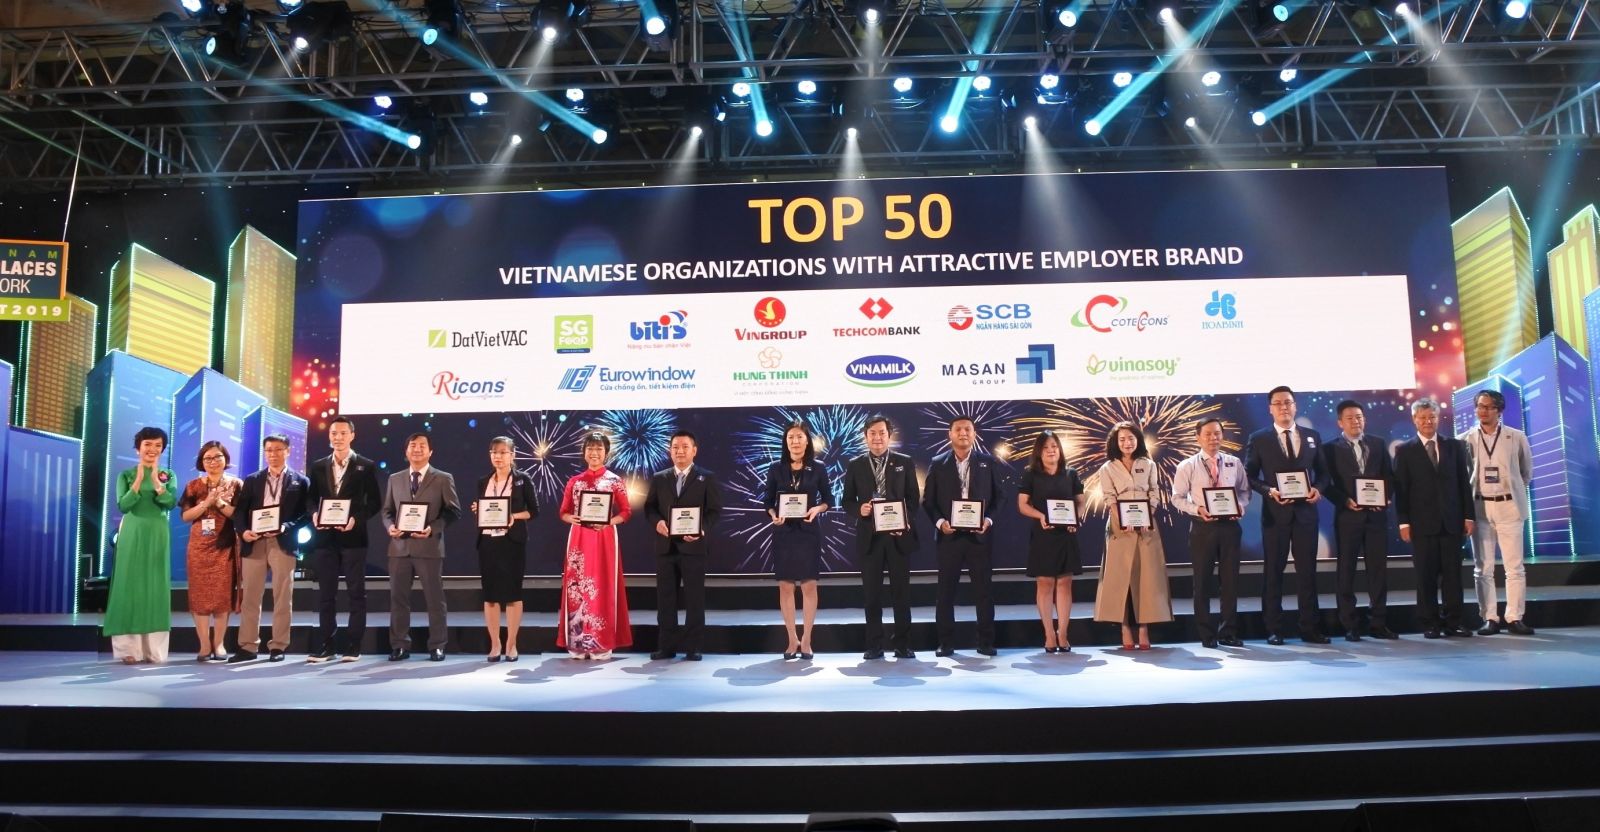 Ngân hàng Sài Gòn - SCB được bình chọn nằm trong “Top 5 Ngân hàng Việt có môi trường làm việc tốt nhất” vàp/“Top 50 Doanh nghiệp Việt có thương hiệu nhà tuyển dụng hấp dẫn 2018”.